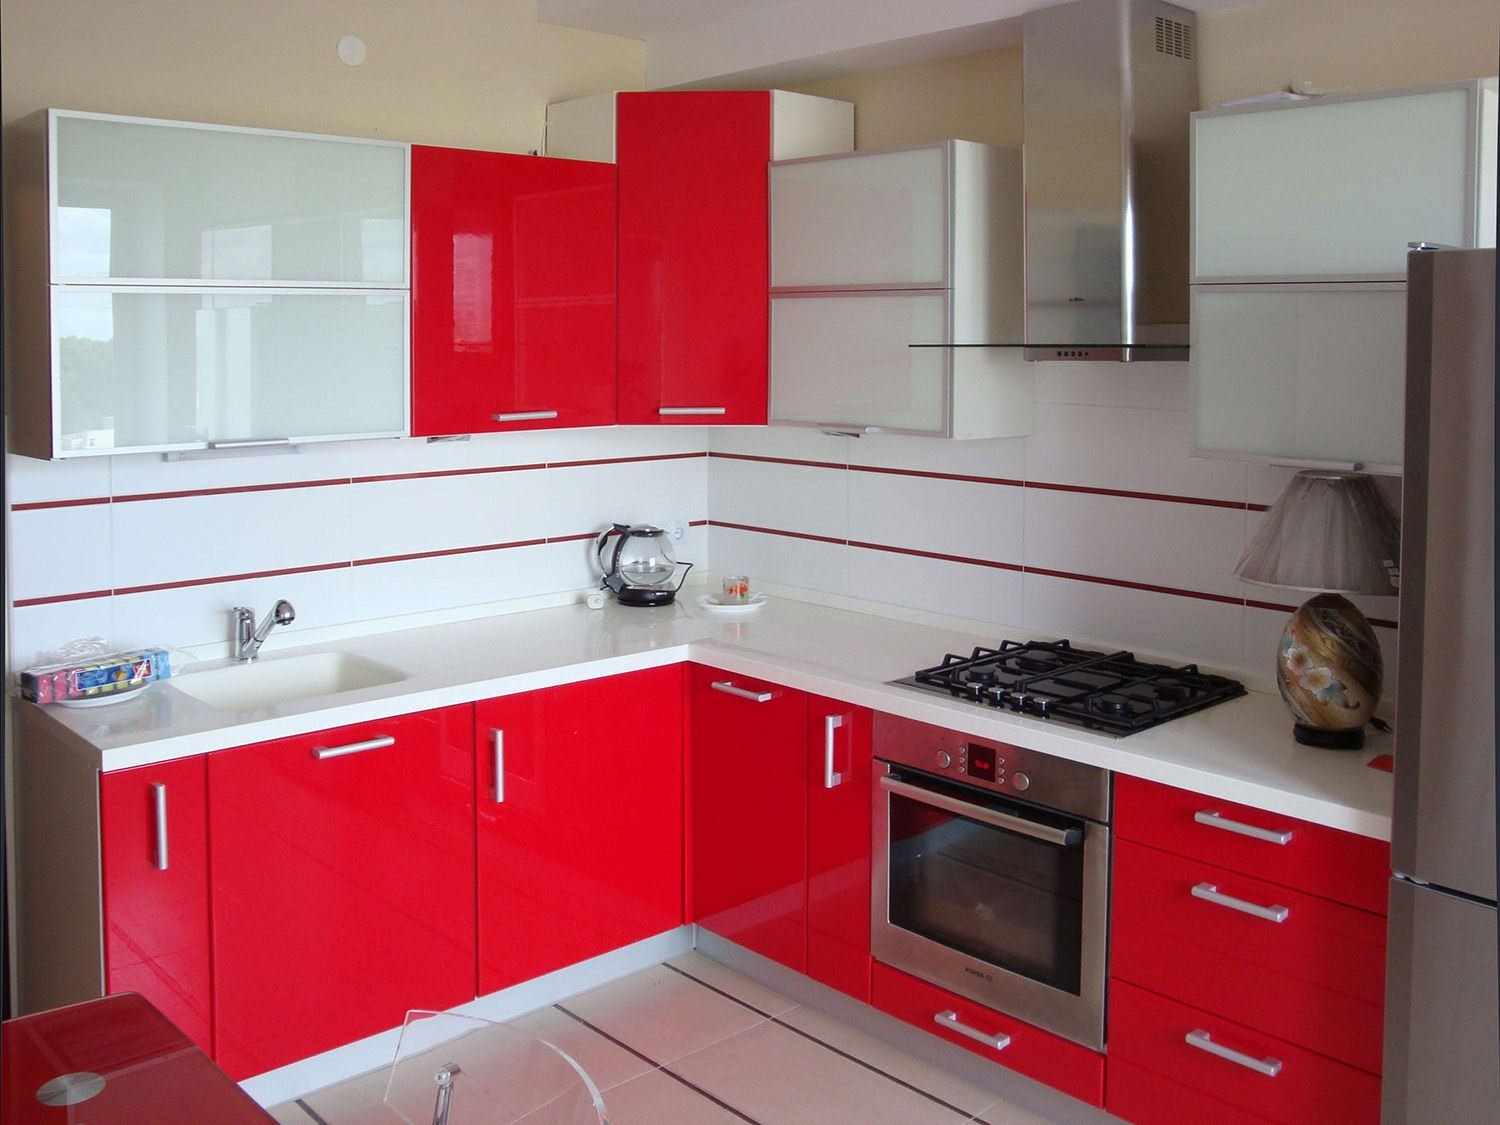 ตัวอย่างของการออกแบบห้องครัวสีแดงอ่อน